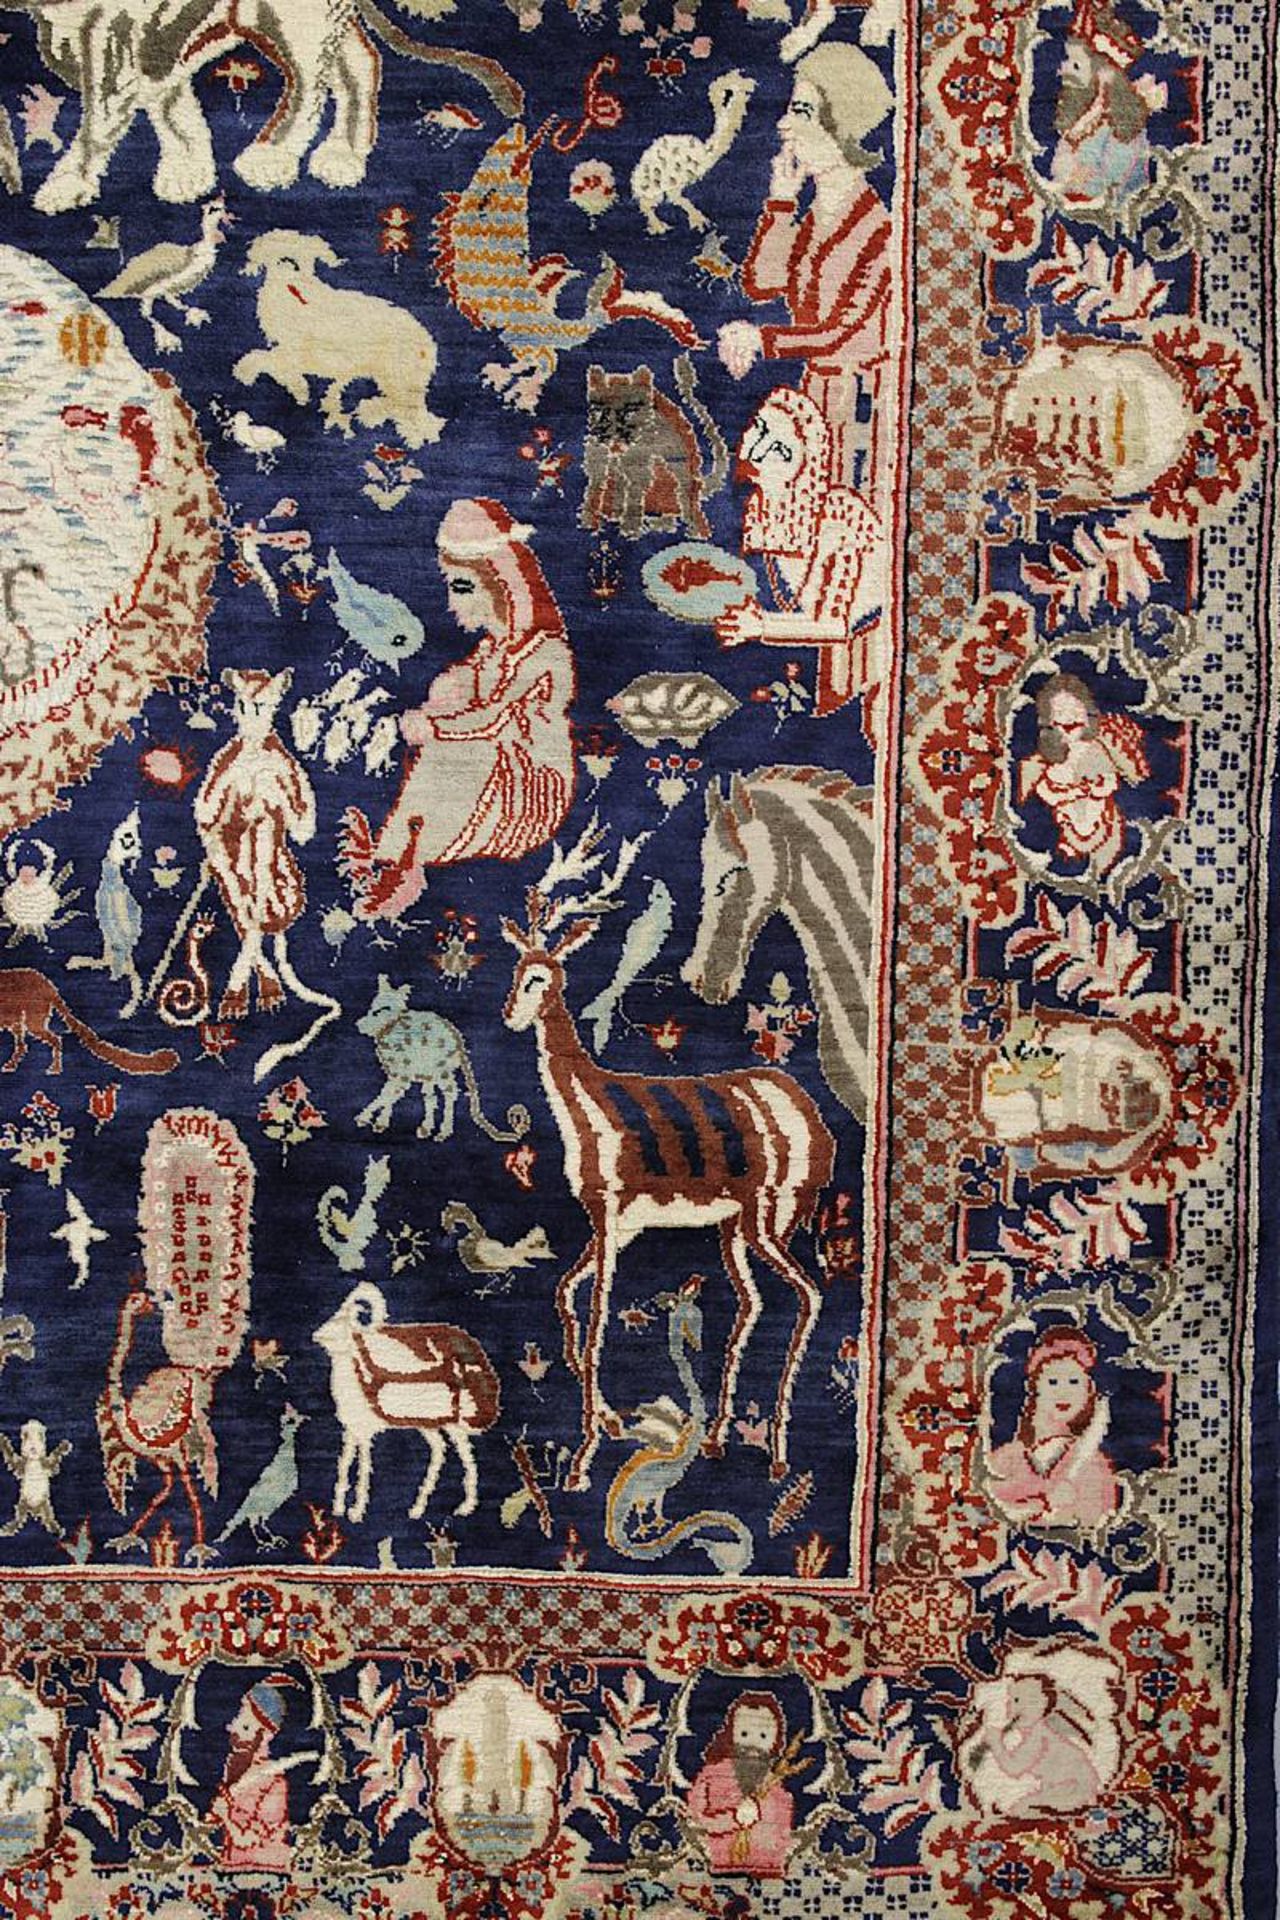 Aufwendiger detailreicher Figurenteppich, Kaschmar, Persien 2. H. 20. Jh., mit Paradiesmotiven u. - Bild 10 aus 14